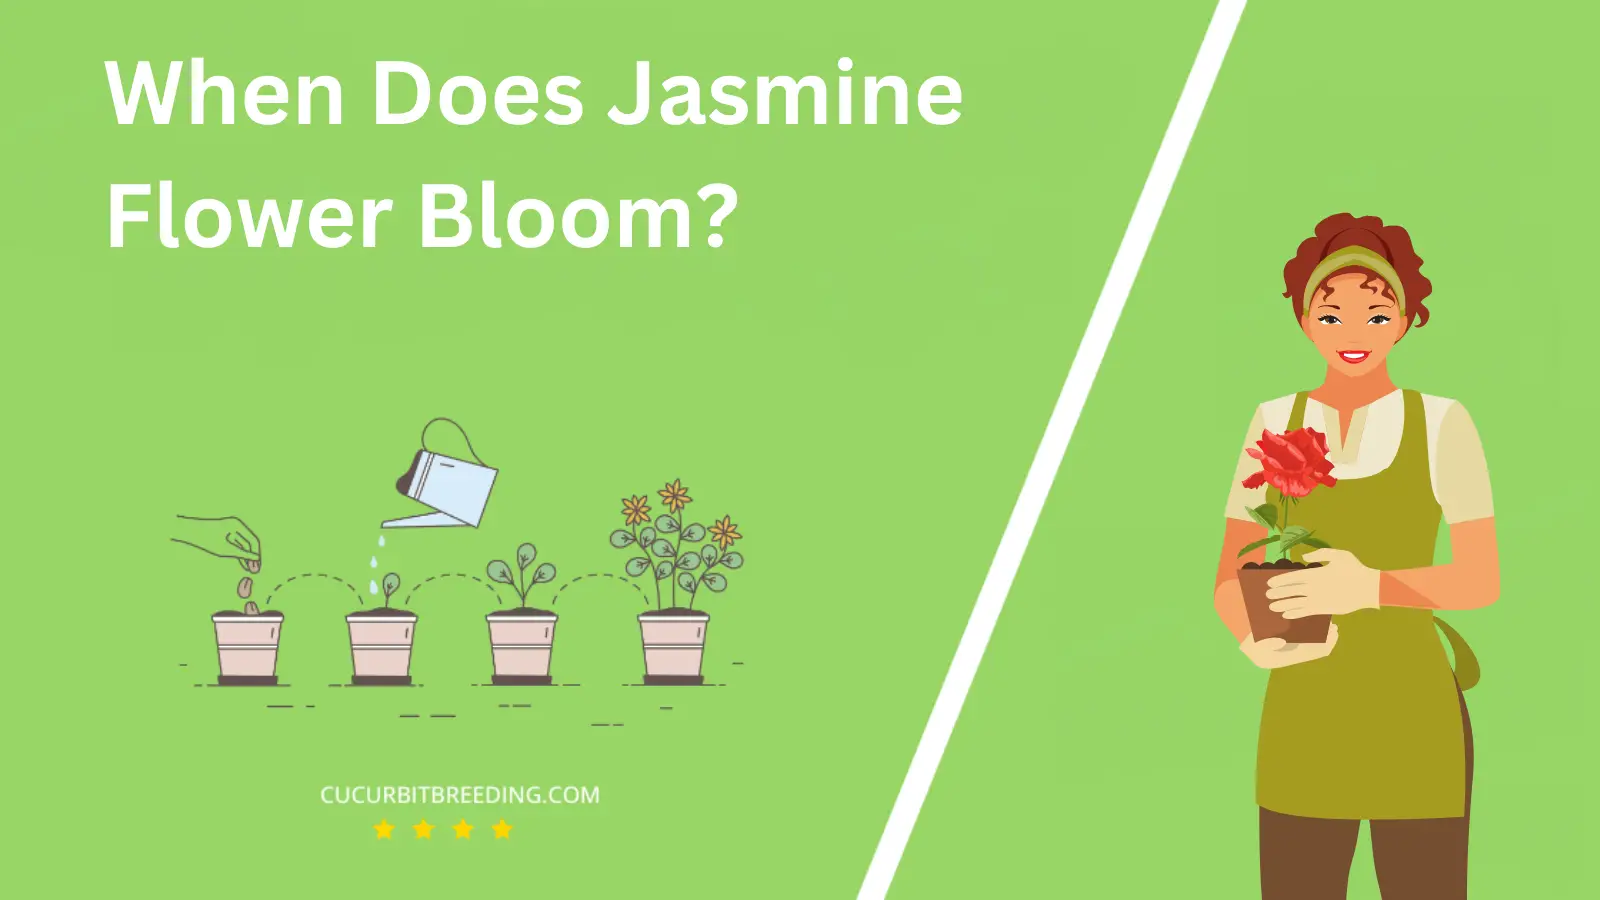 When Does Jasmine Flower Bloom?